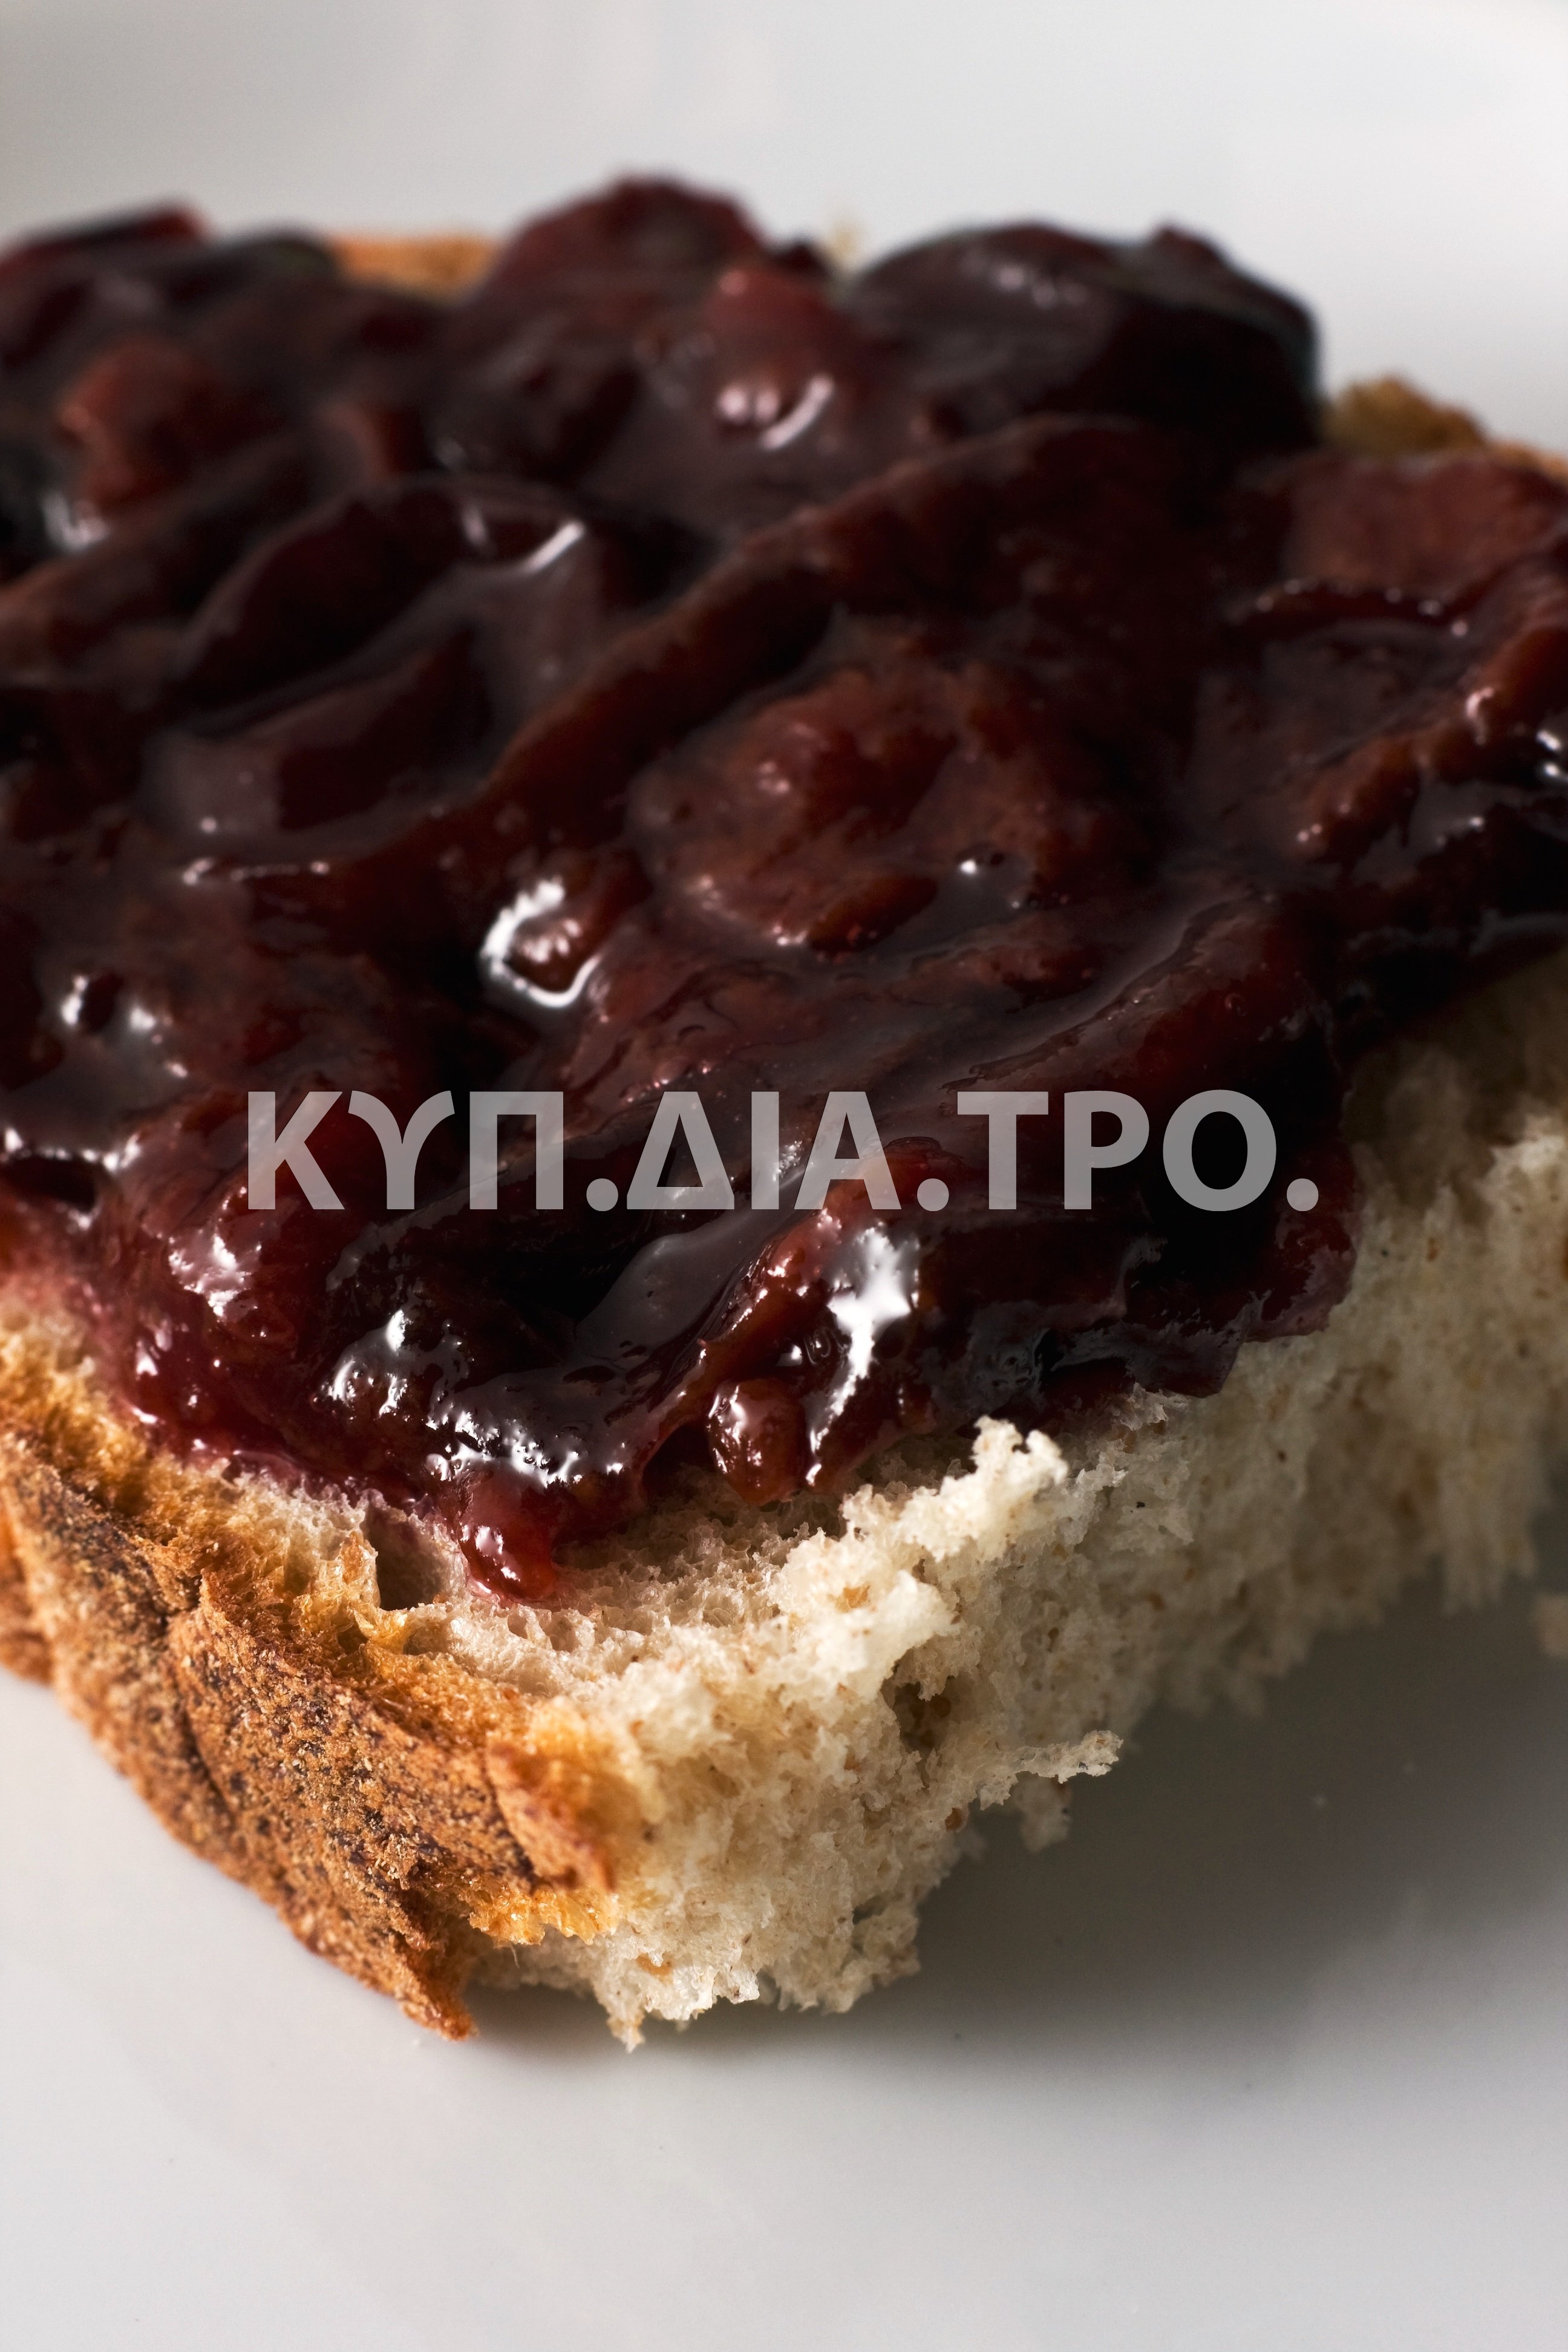 Μαρμελάδα μαραπέλλα, απλωμένη σε ψωμί. <br/> Πηγή: Horia Varlan, https://www.flickr.com/photos/horiavarlan/4268226019/in/photostream/